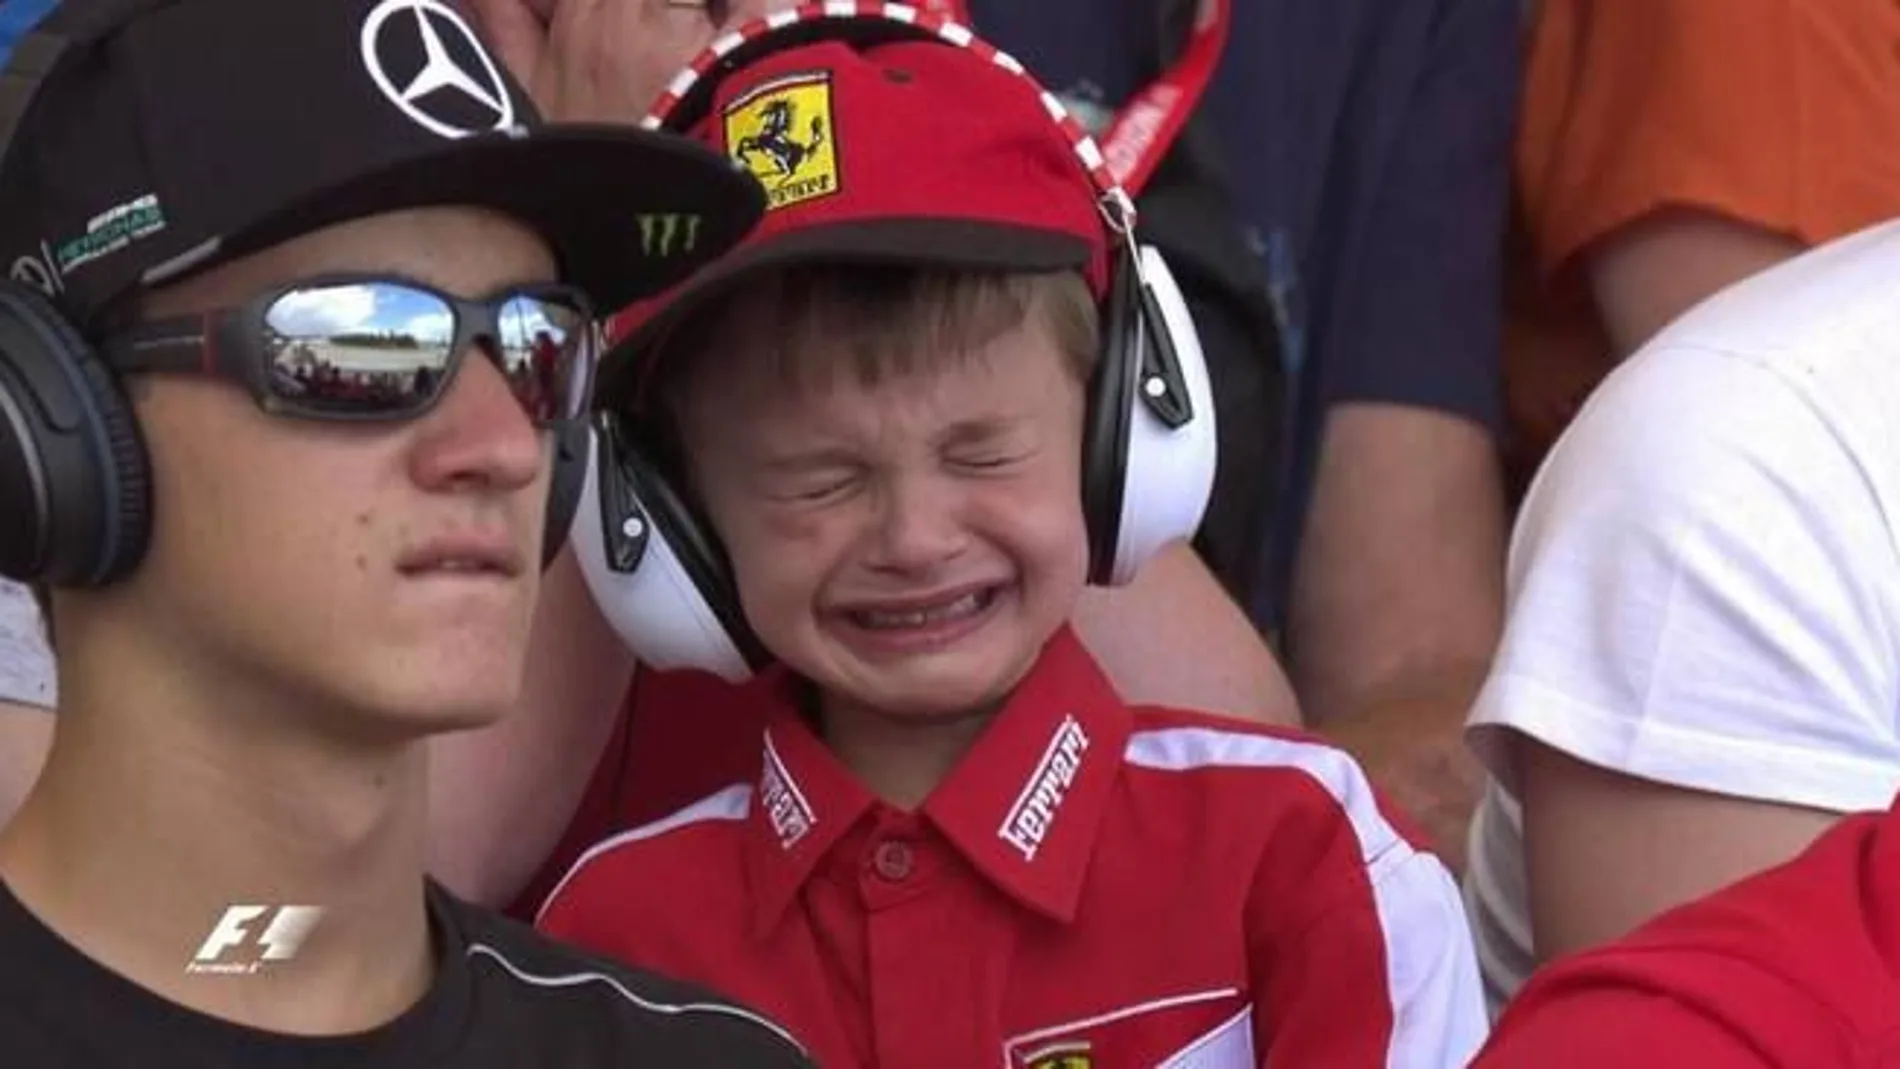 El niño llorando cuando Raikkonen tuvo que abandonar la carrera